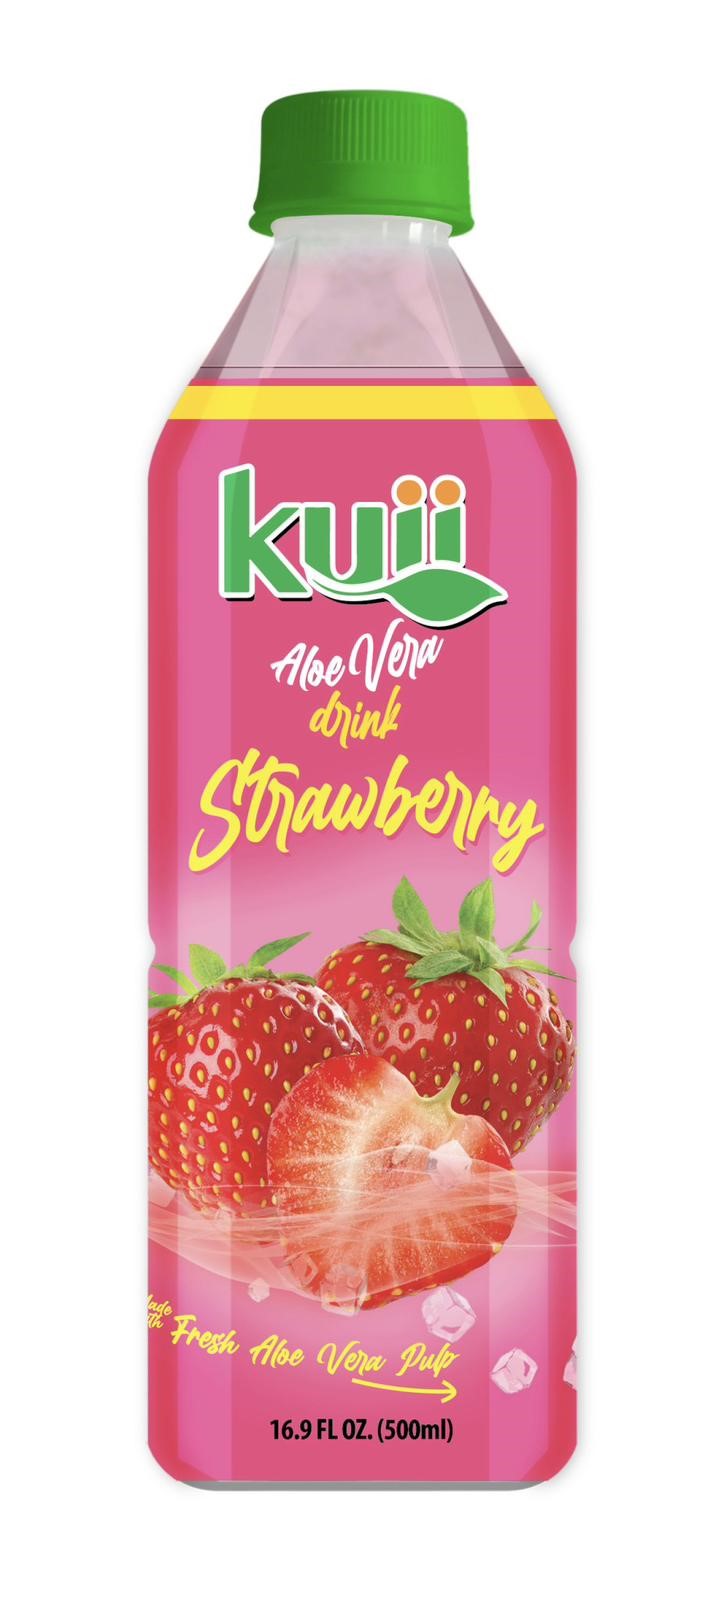 Kuii strawberry kiwi aloe 12ct 16.4oz